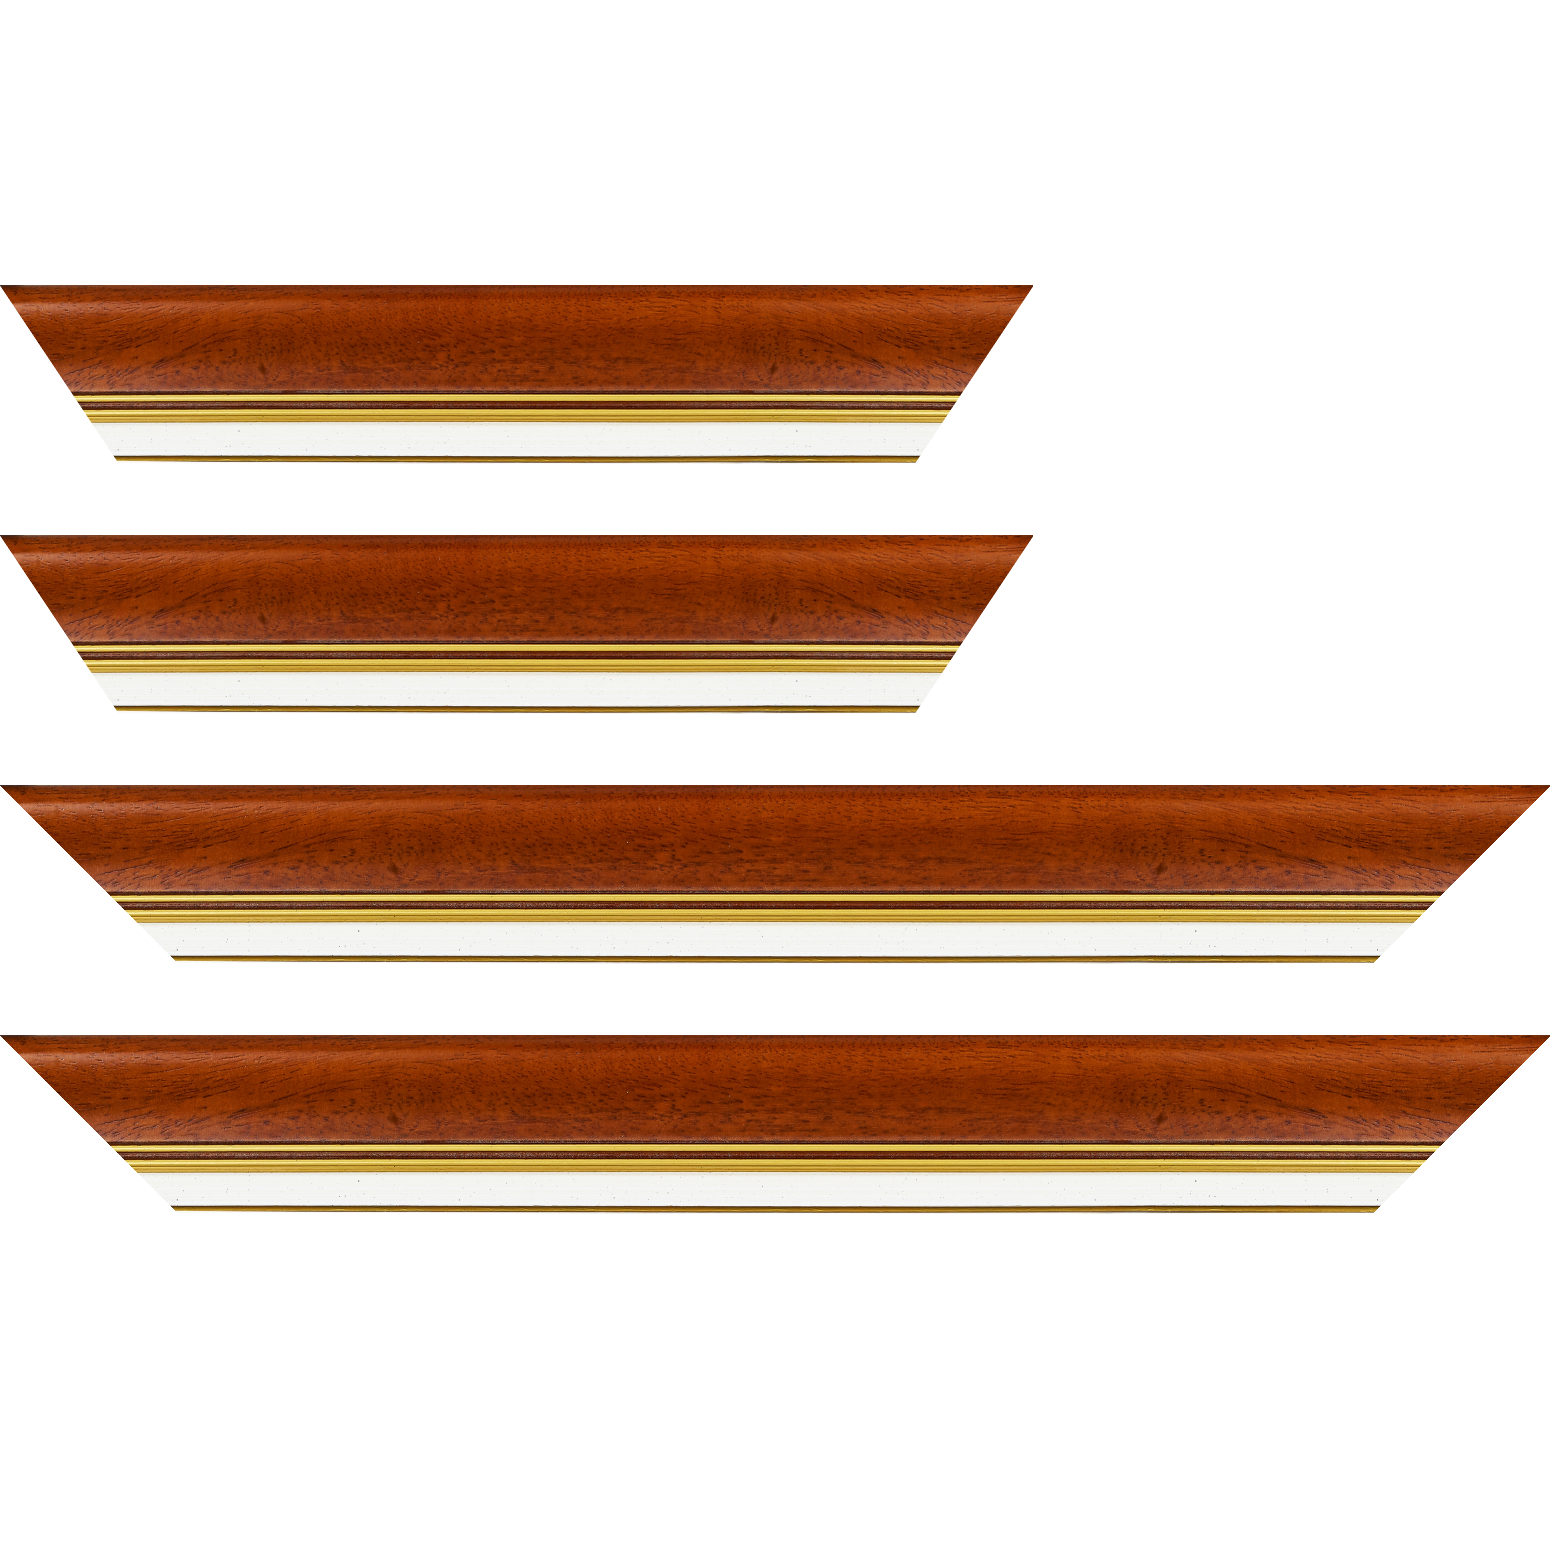 Baguette bois profil incurvé largeur 5.7cm de couleur marron ton bois marie louise blanche mouchetée filet or intégré - 28x34